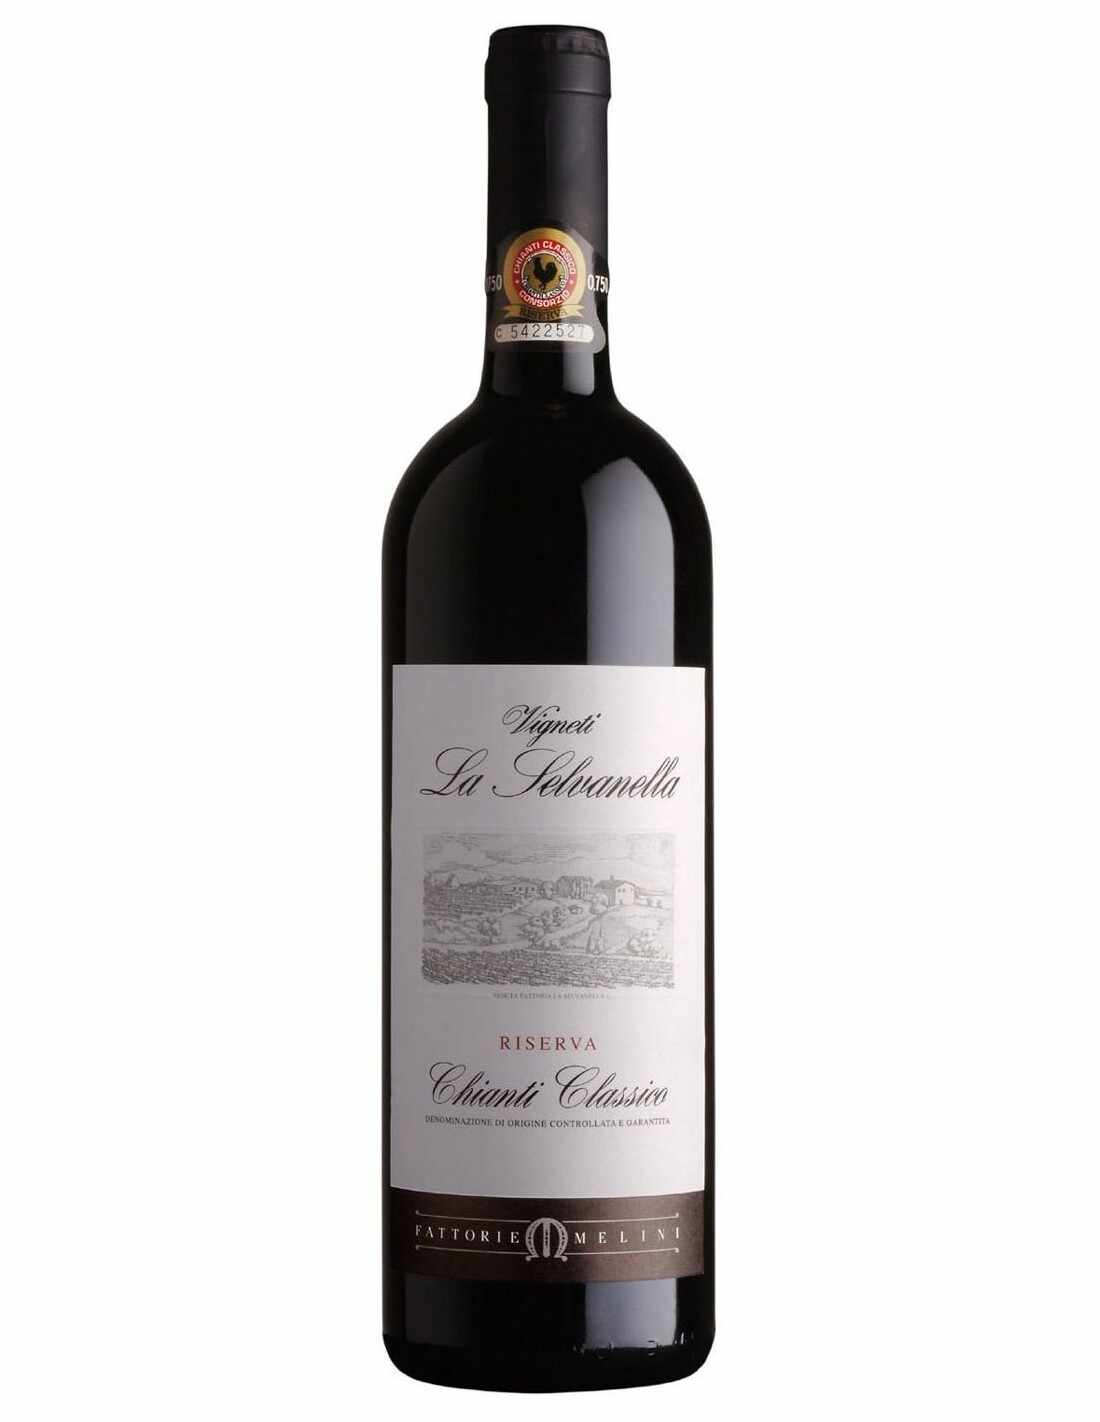 Vin rosu sec, Vigneti La Selvanella Chianti Classico Riserva, 0.75L, 14.5% alc., Italia